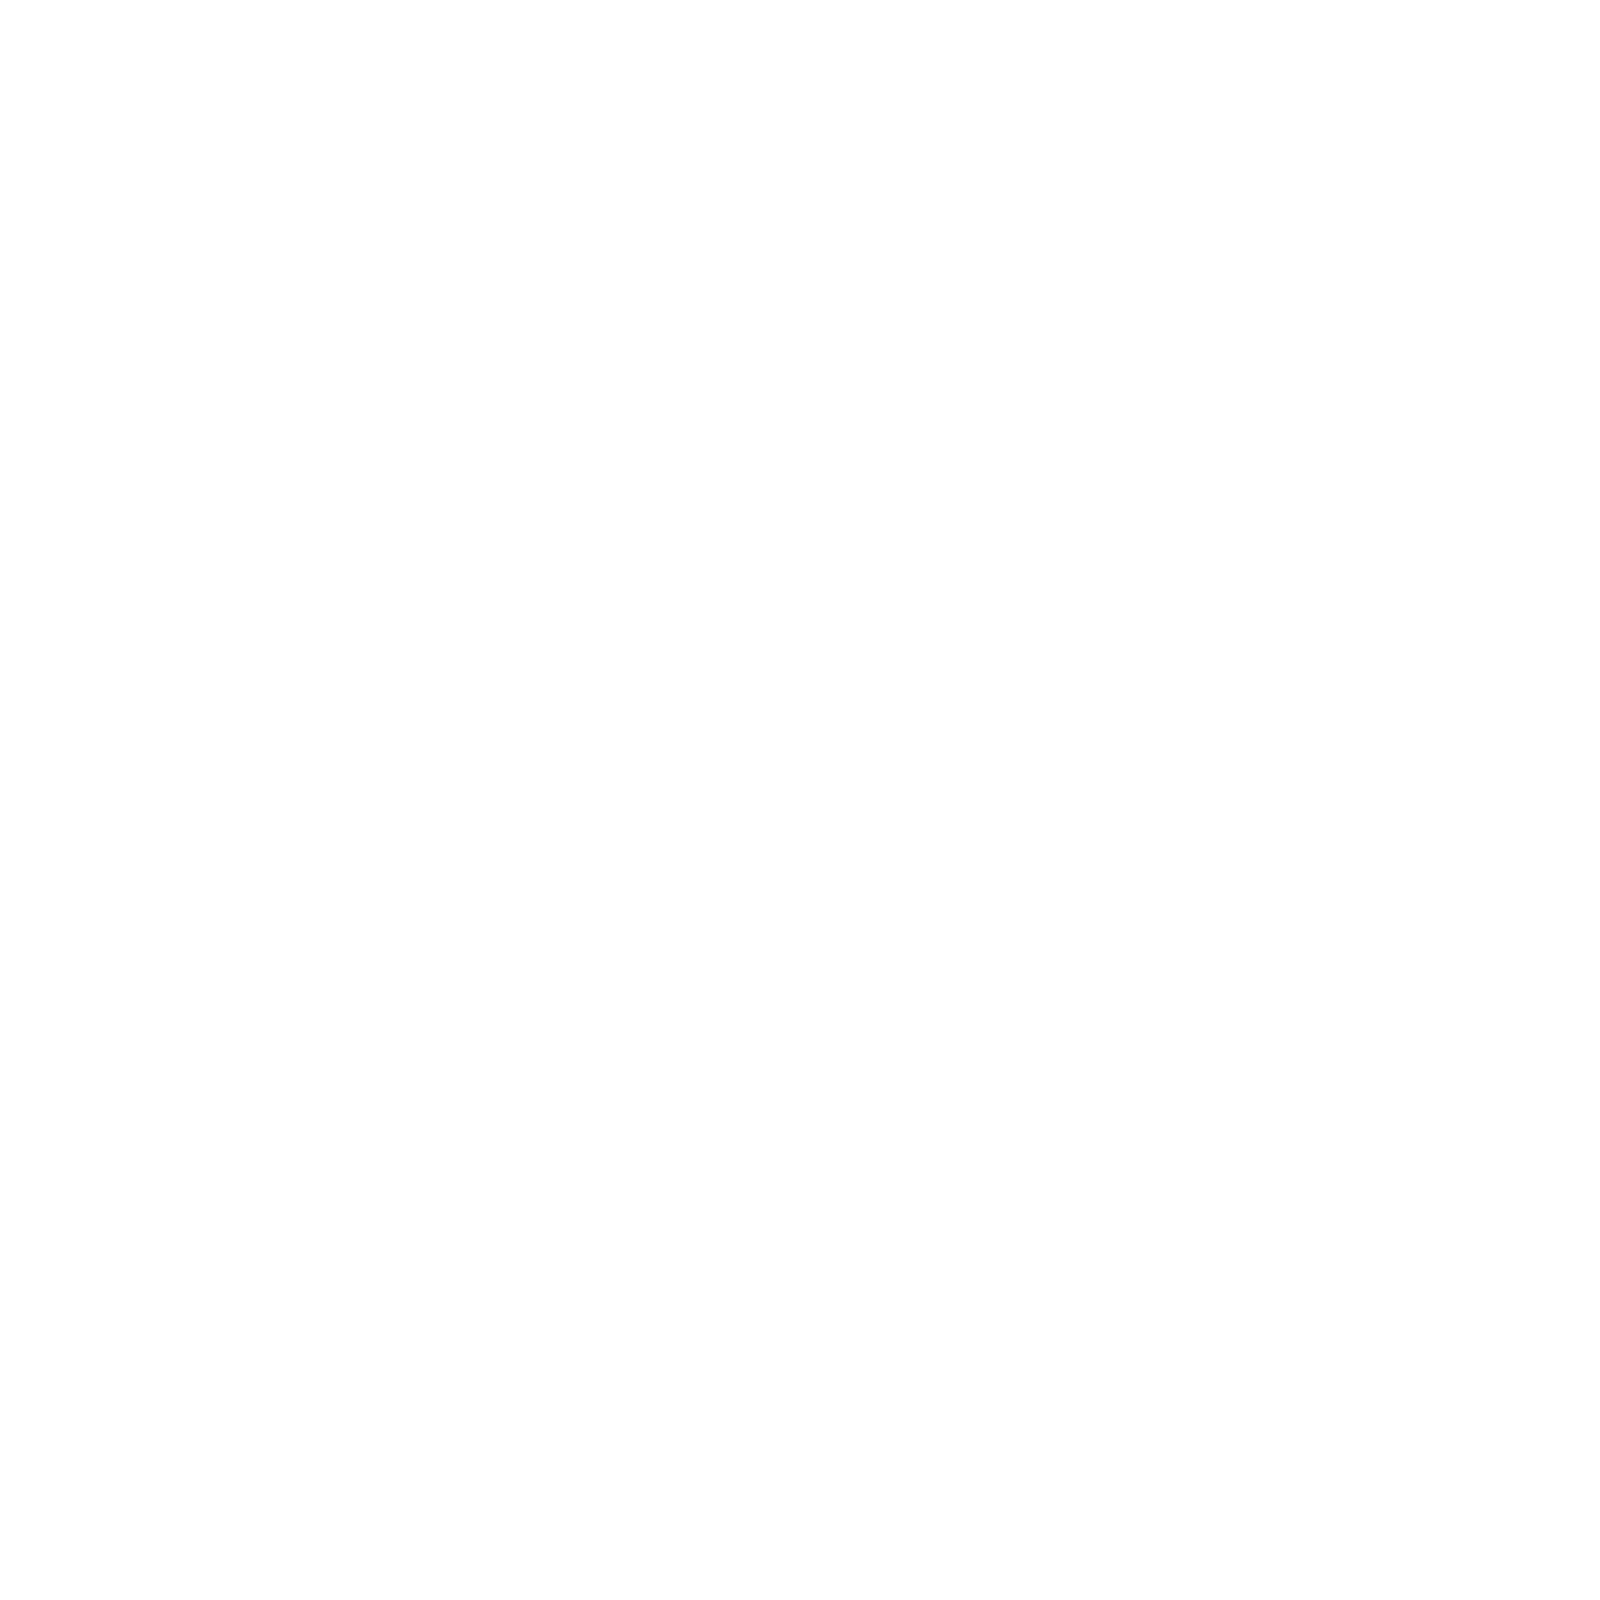 EVERY FARM